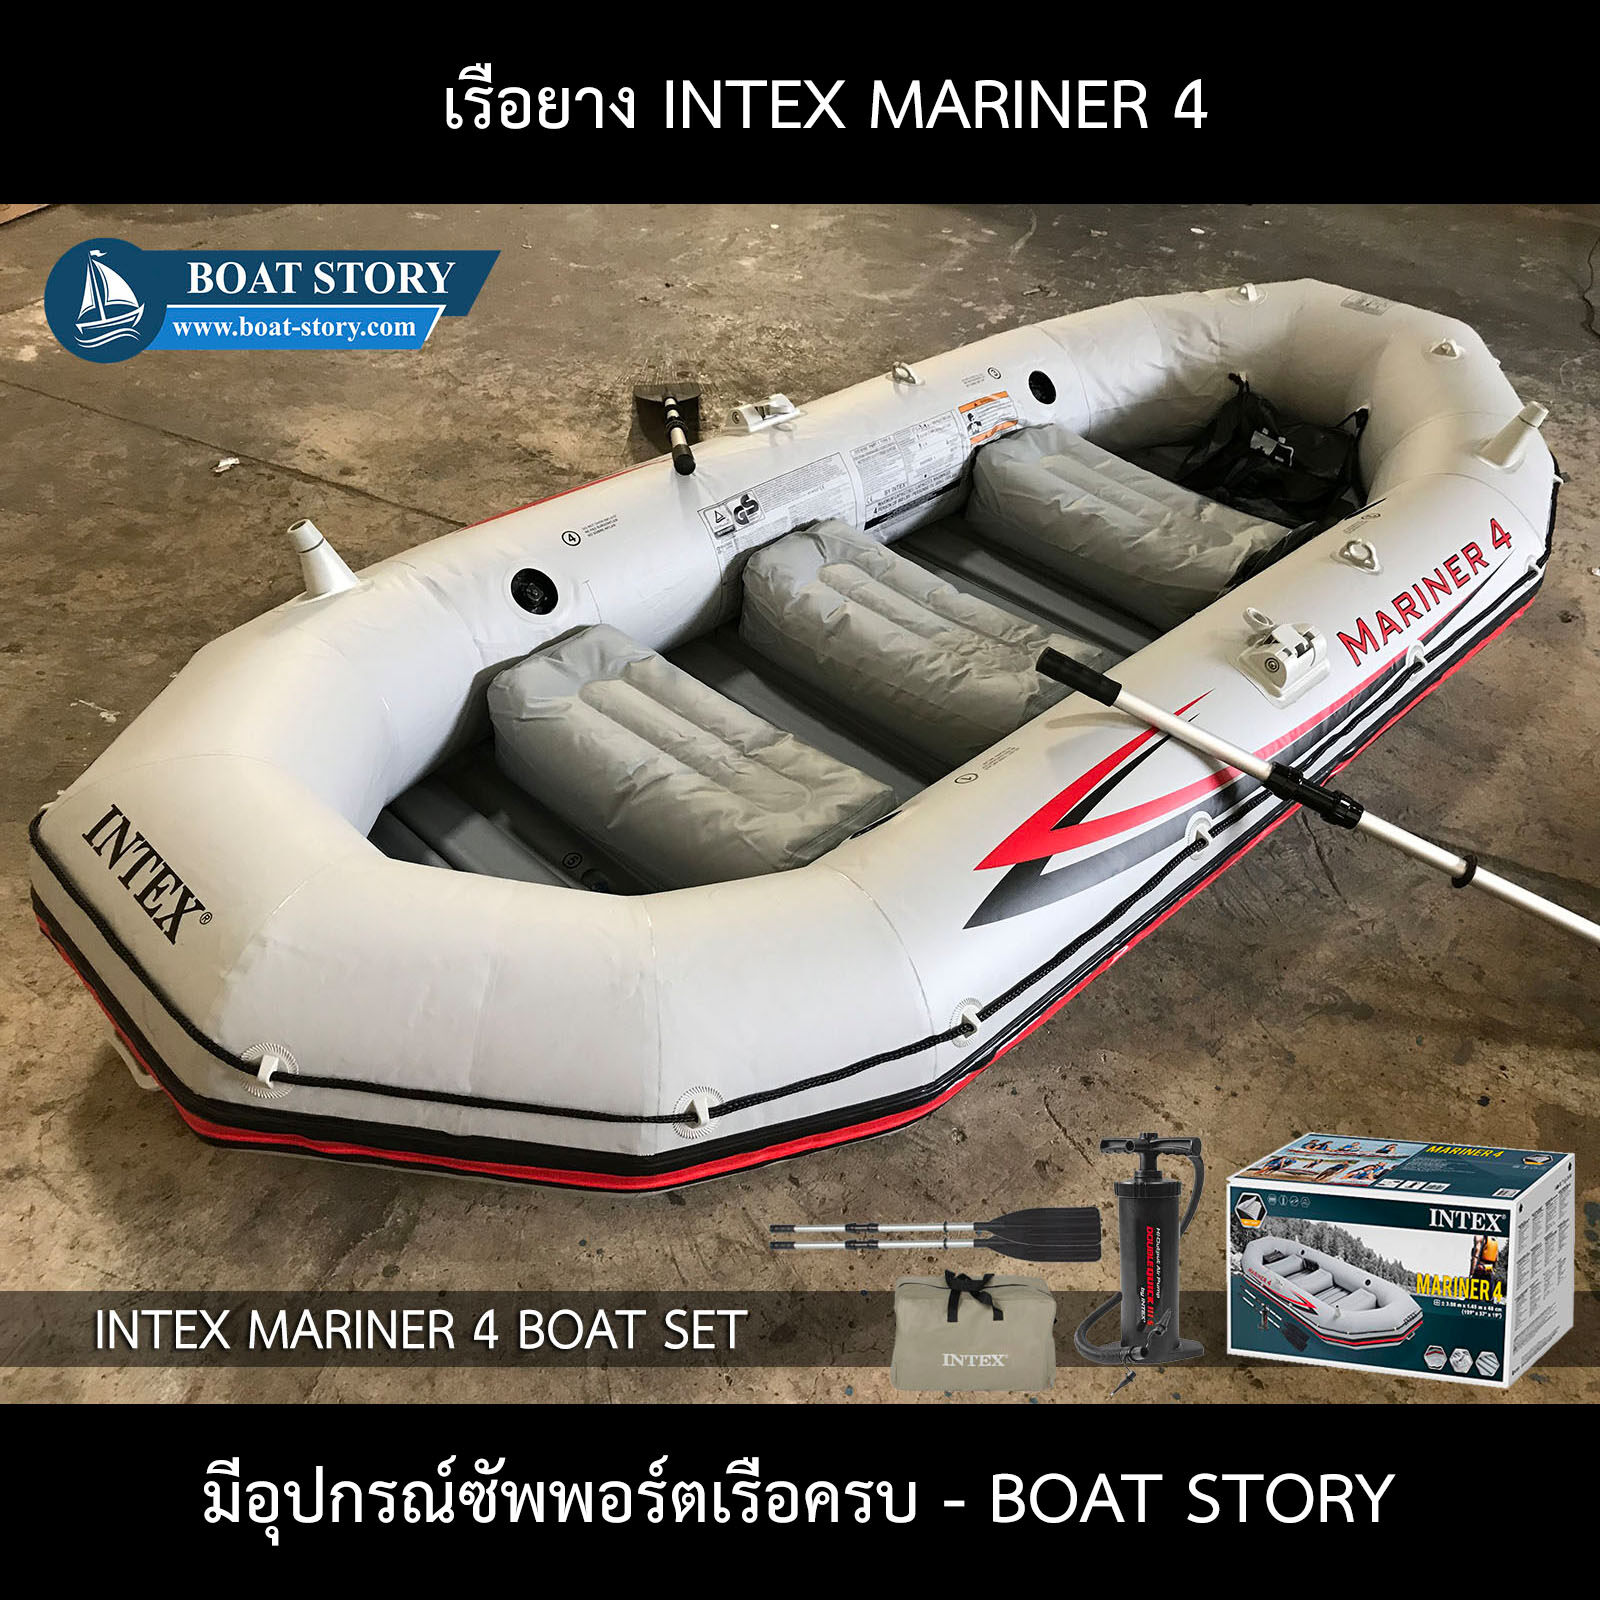 เรือยาง INTEX Mariner 4 ติดเครื่องยนต์ได้ อุปกรณ์ครบชุด รับน้ำหนักได้ 500 กิโลกรัม จาก BOAT STORY